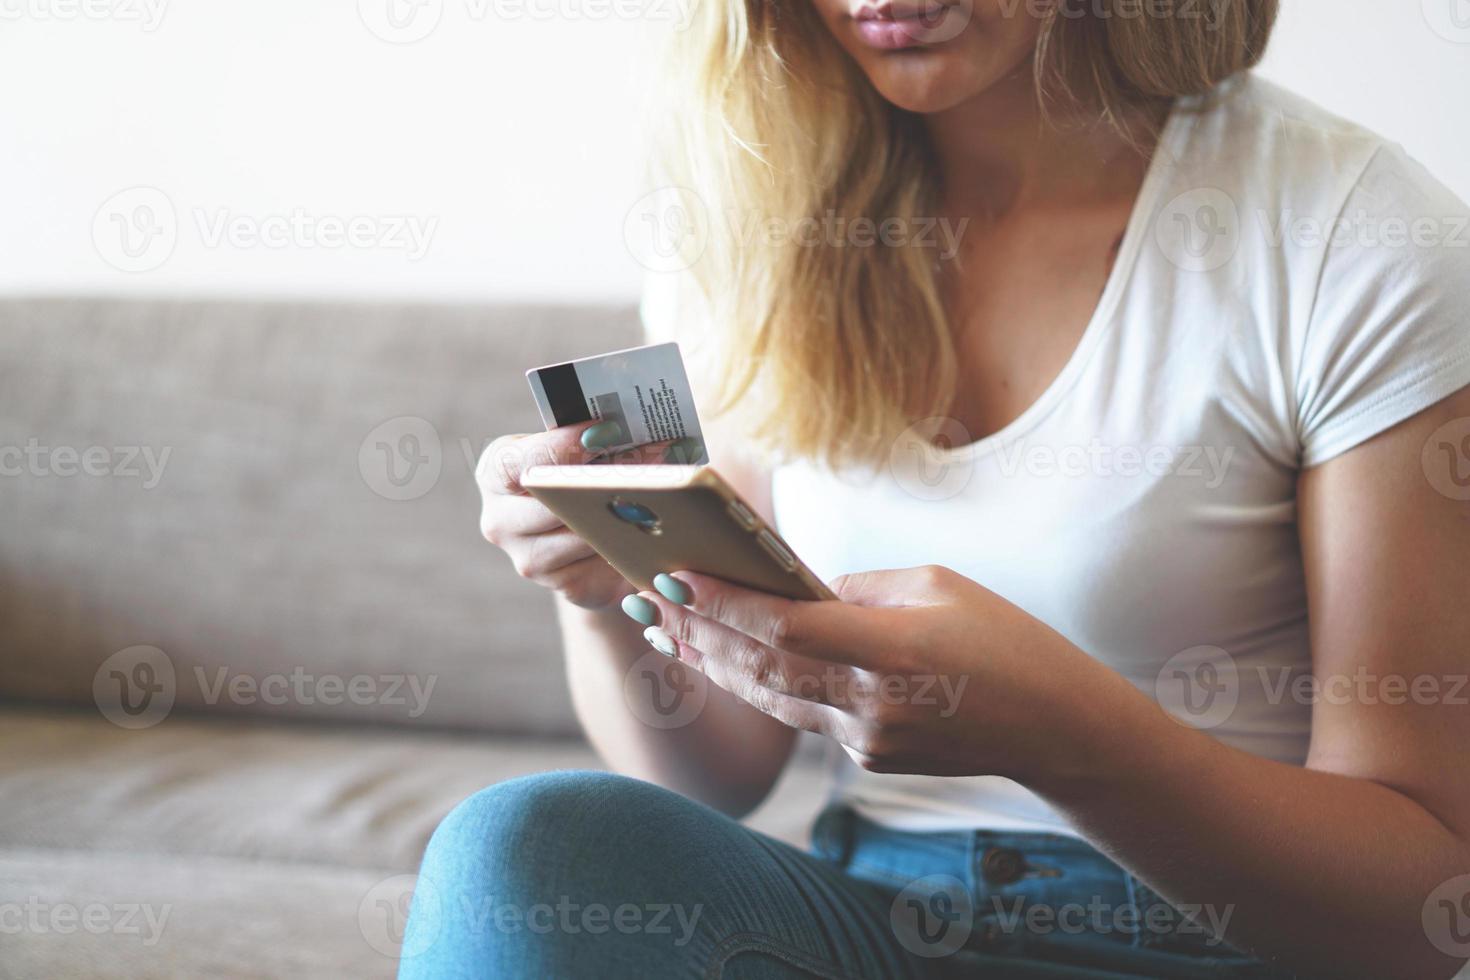 paiement en ligne, mains de femme tenant un smartphone et utilisant une carte de crédit photo